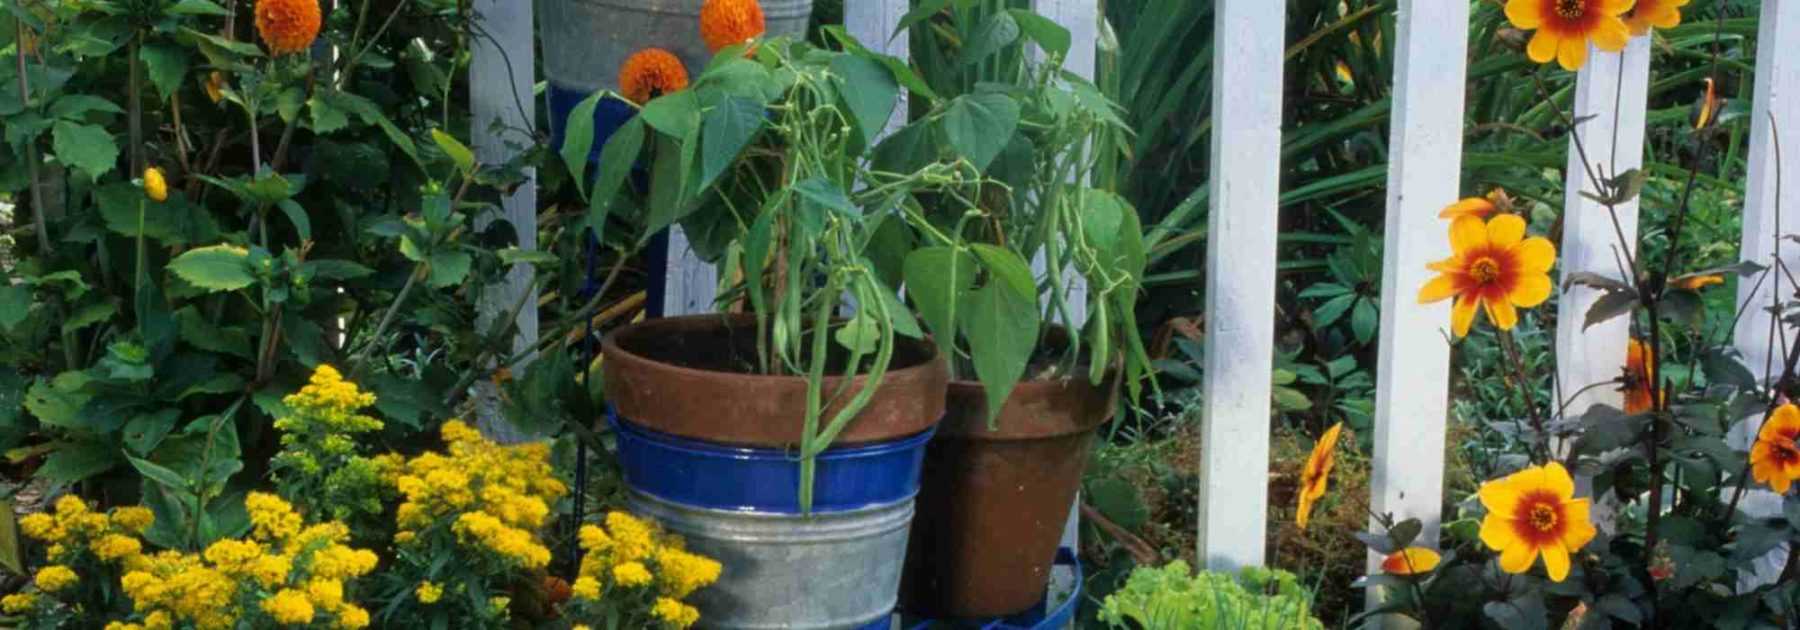 comment bien planter ses graines aromatiques - Conseils Blog Jardin